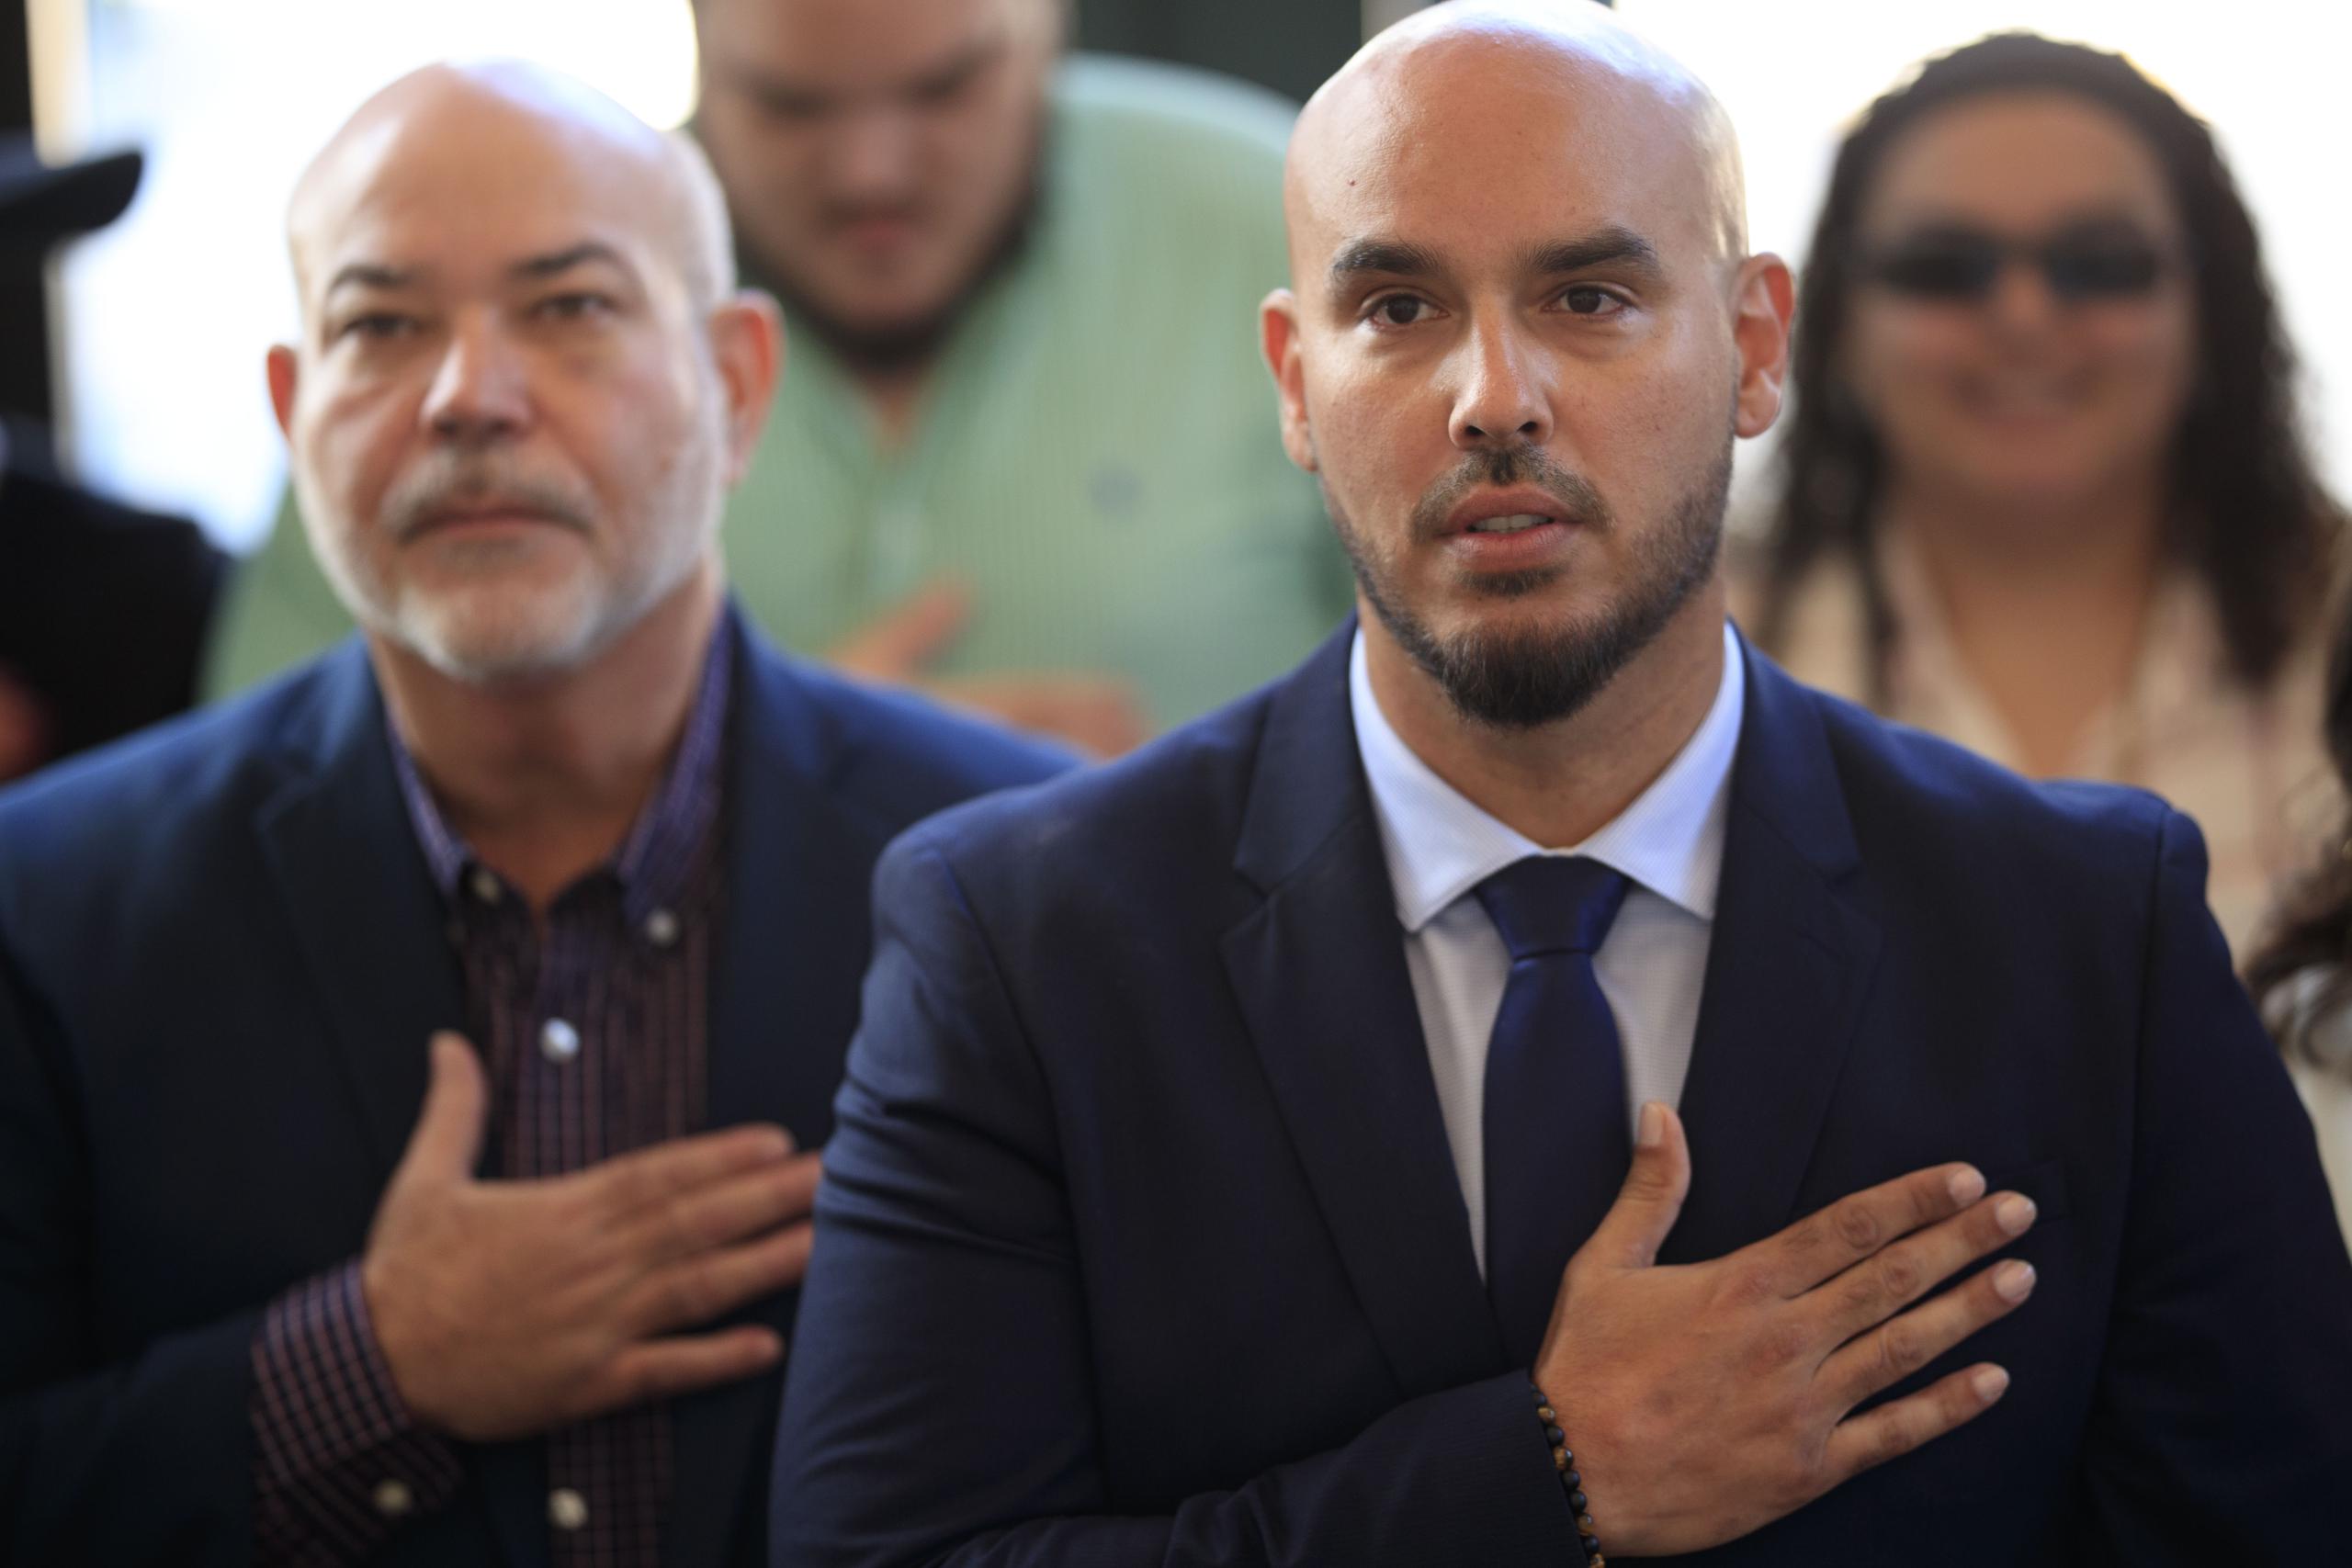 El nuevo alcalde de Fajardo, José Aníbal Meléndez, juramentó junto a varios familiares como su tío el presidente de la Cámara de Representantes, Carlos "Johnny" Méndez.